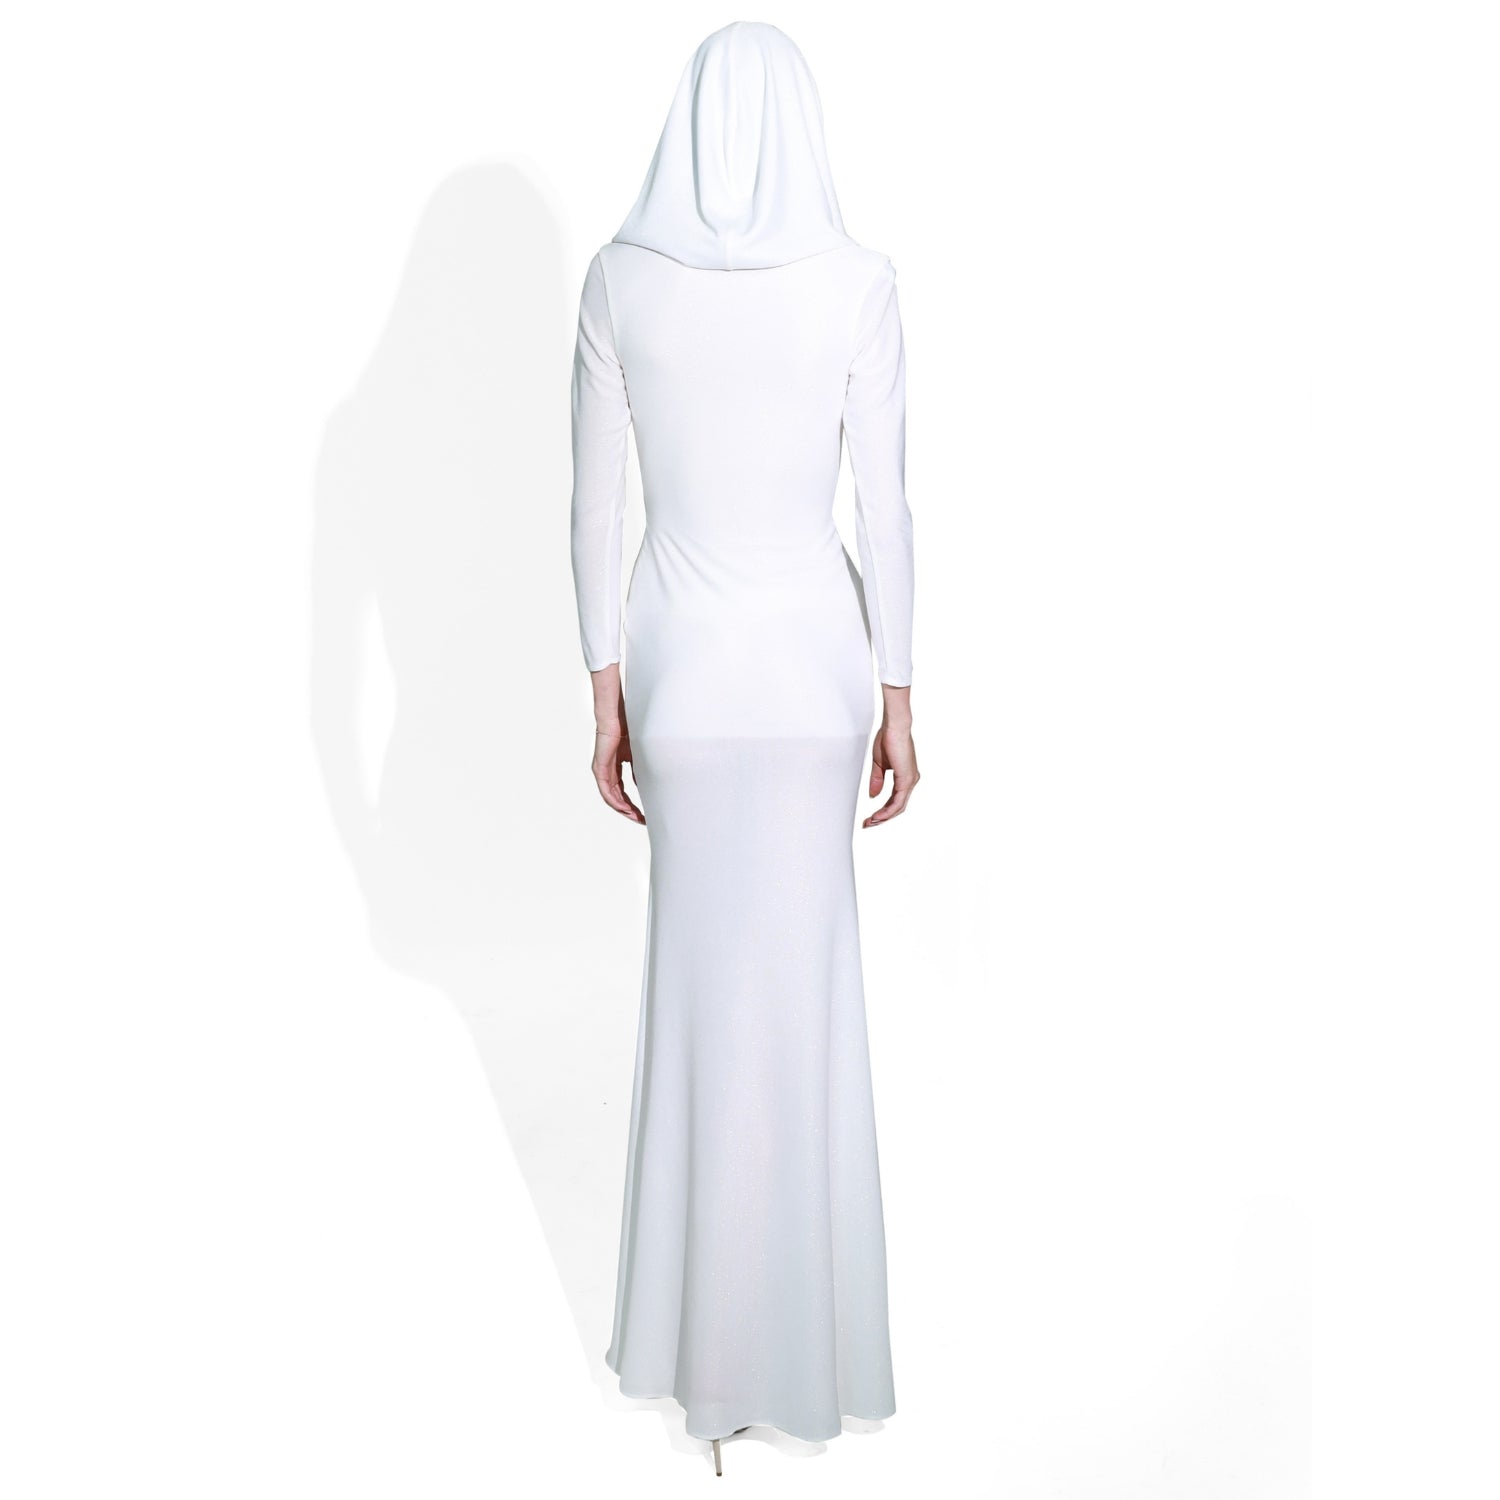 Goddess Hooded Long Dress